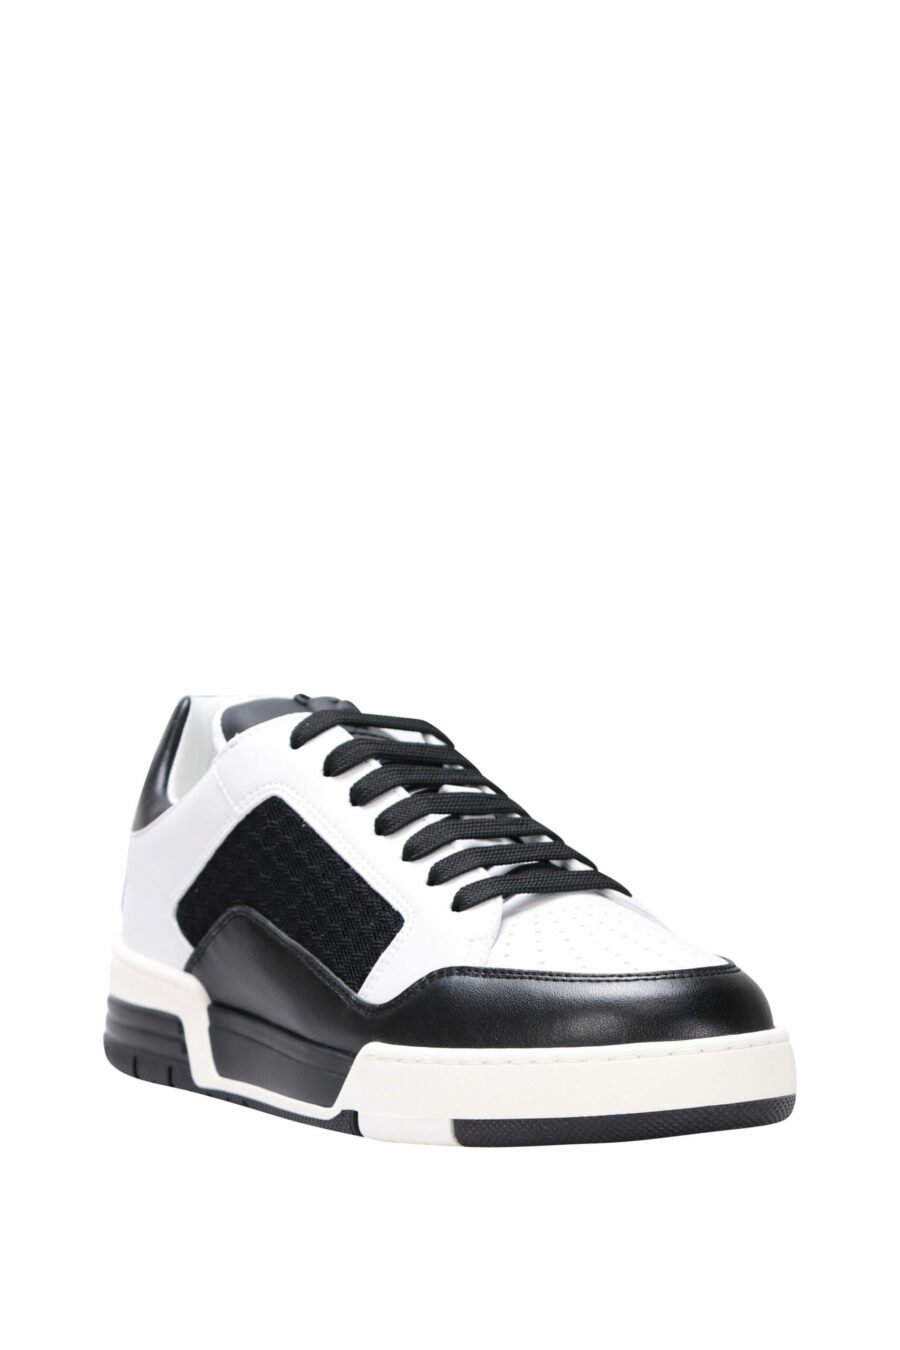 Zapatillas bicolor negras y blanco "kevin40" con minilogo - 8054388024457 1 scaled